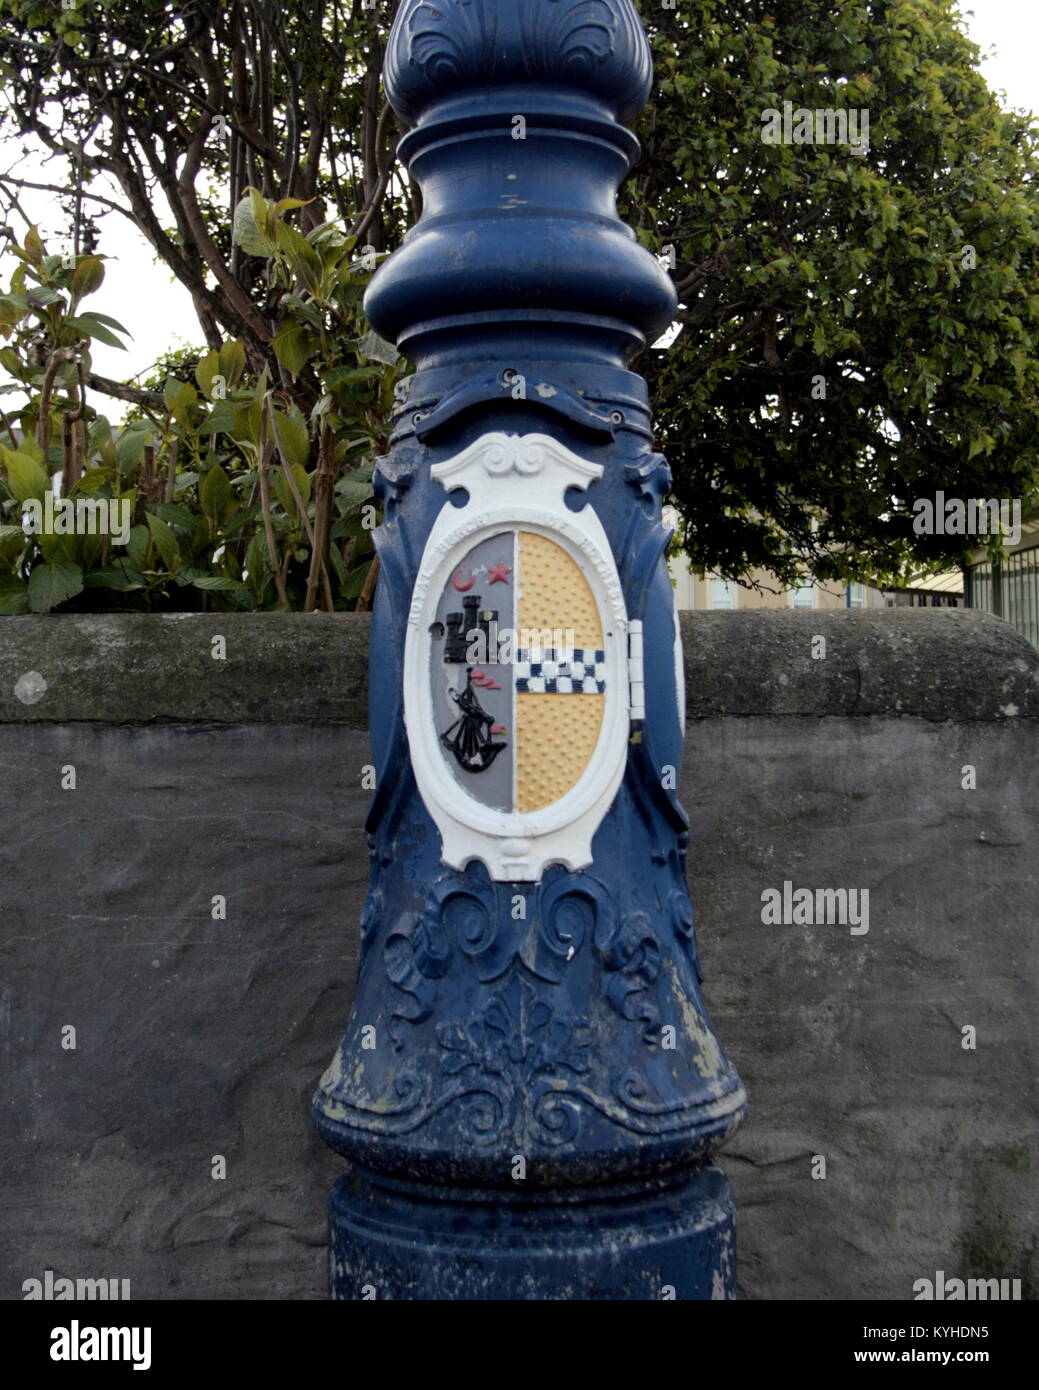 Farola ornamentados con ayuntamientos crest escudo de armas recién pintada Rothesay, Reino Unido Foto de stock